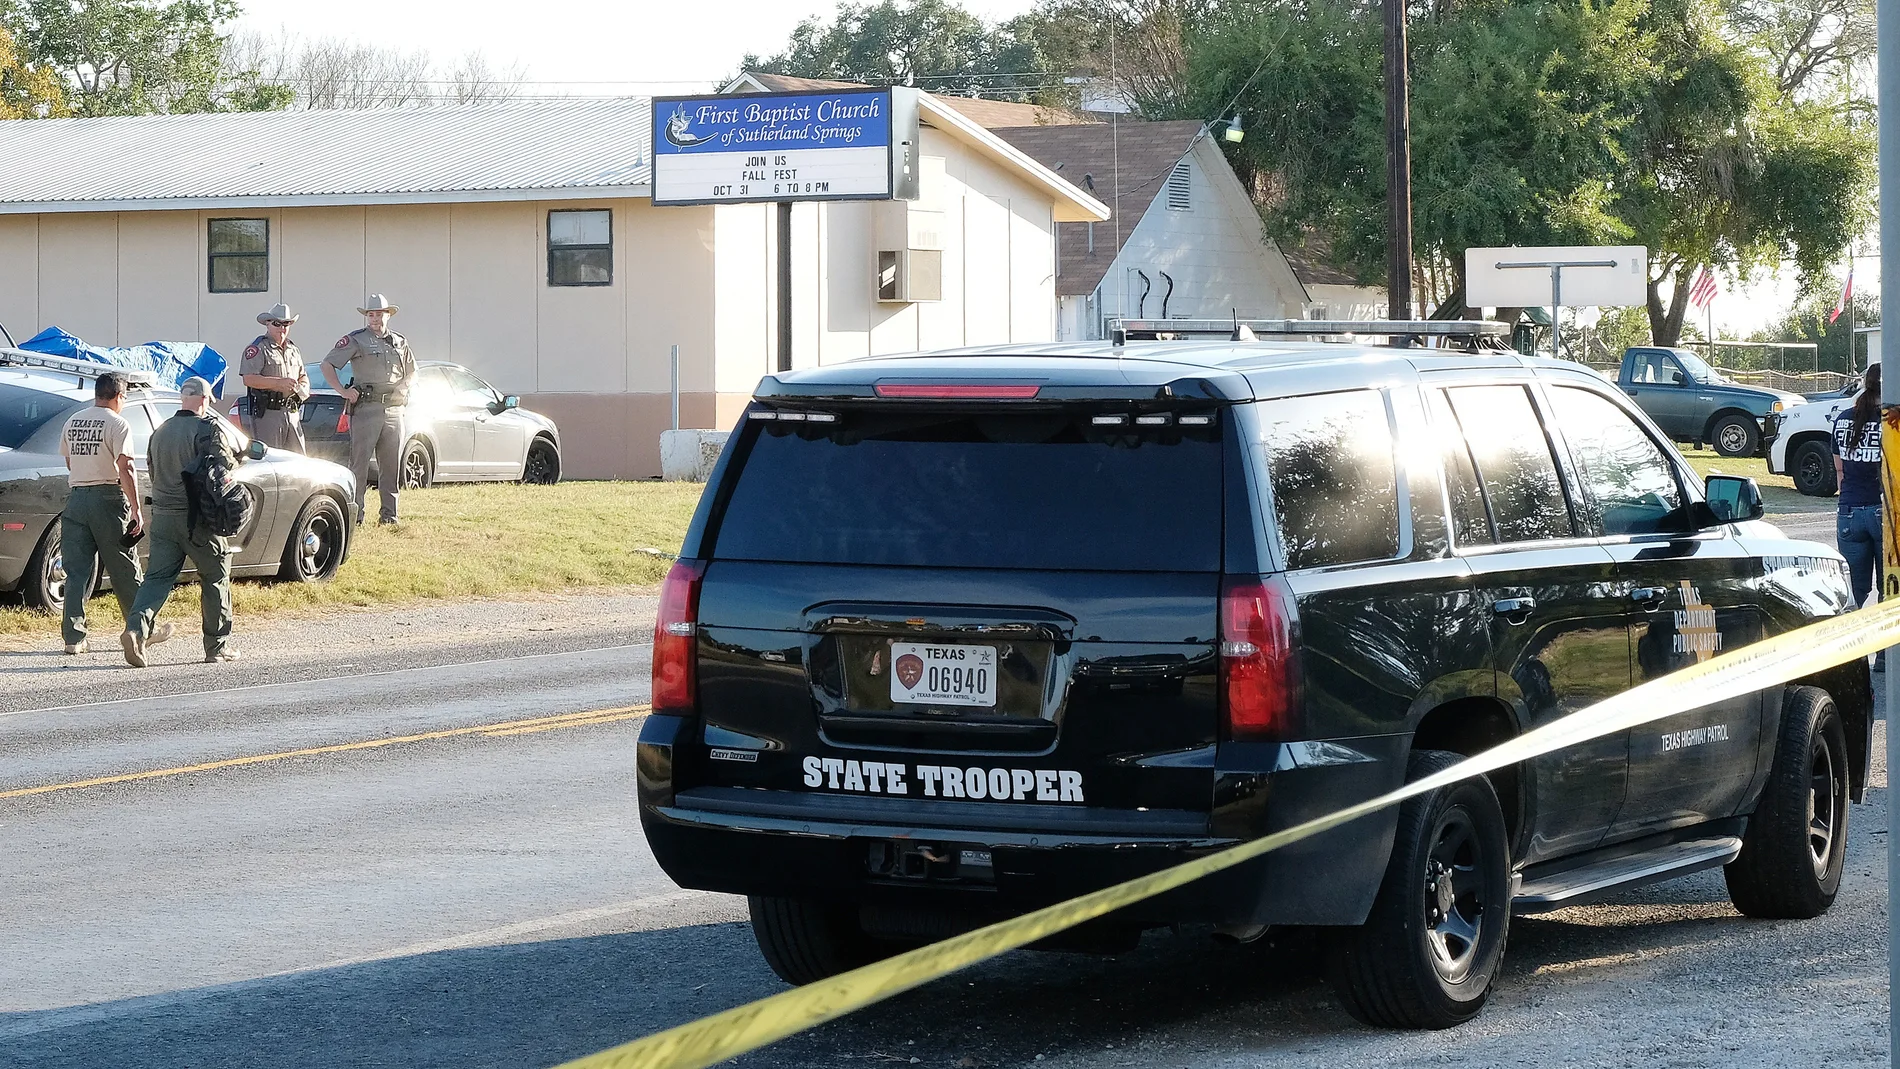 Los agentes acordonan la zona del tiroteo en una iglesia de Texas